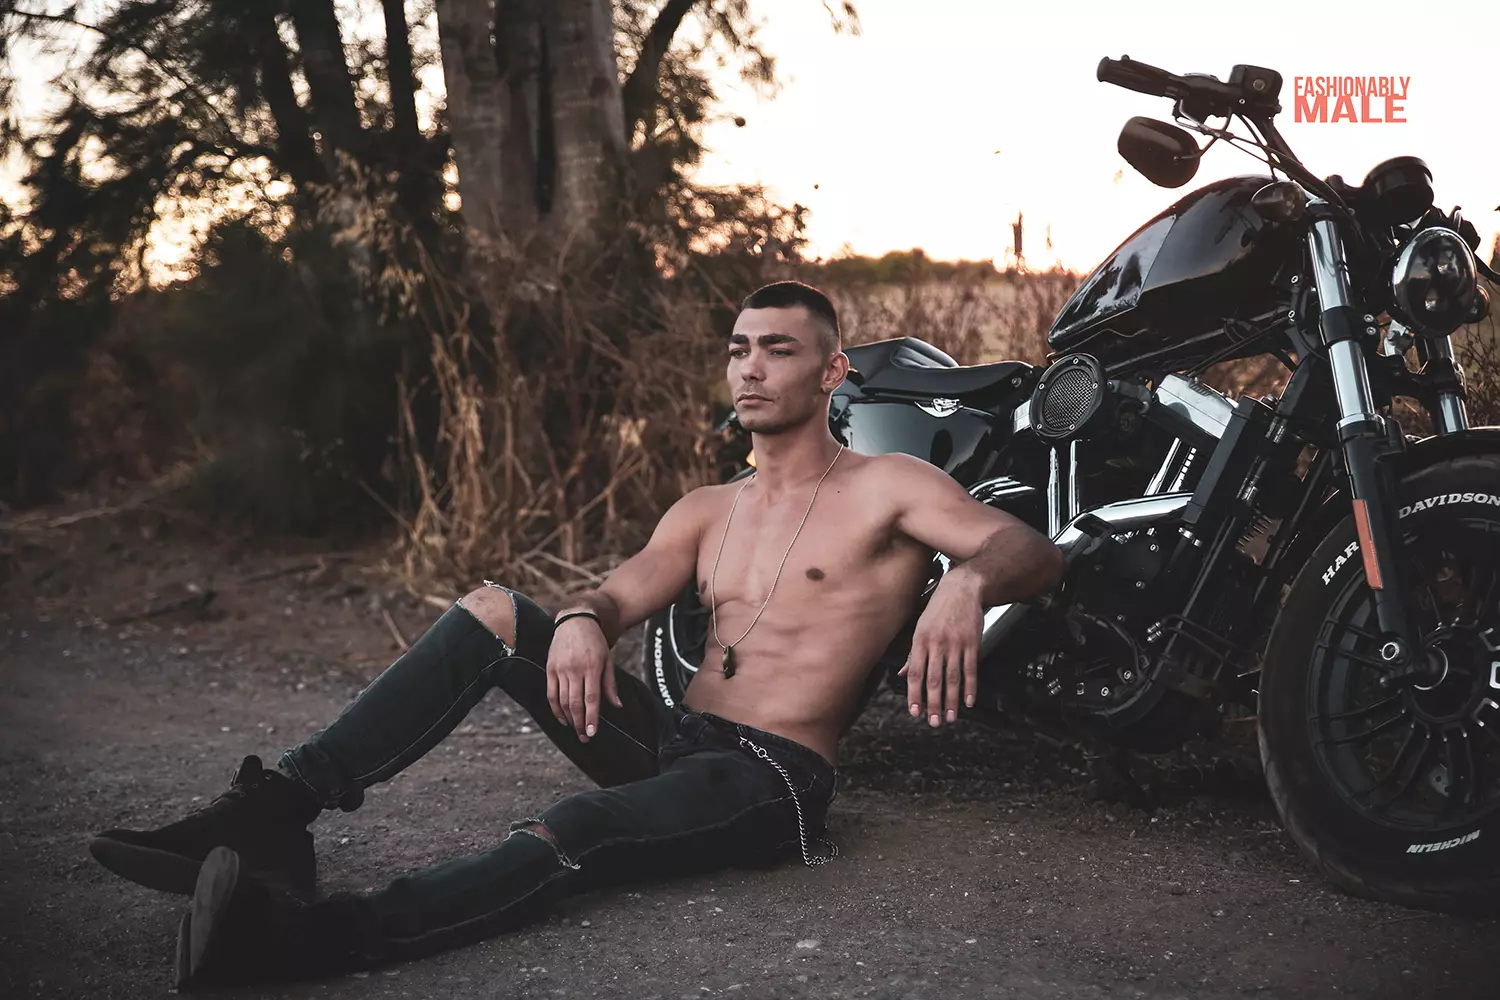 דגם גברי ללא חולצה באופנוע.